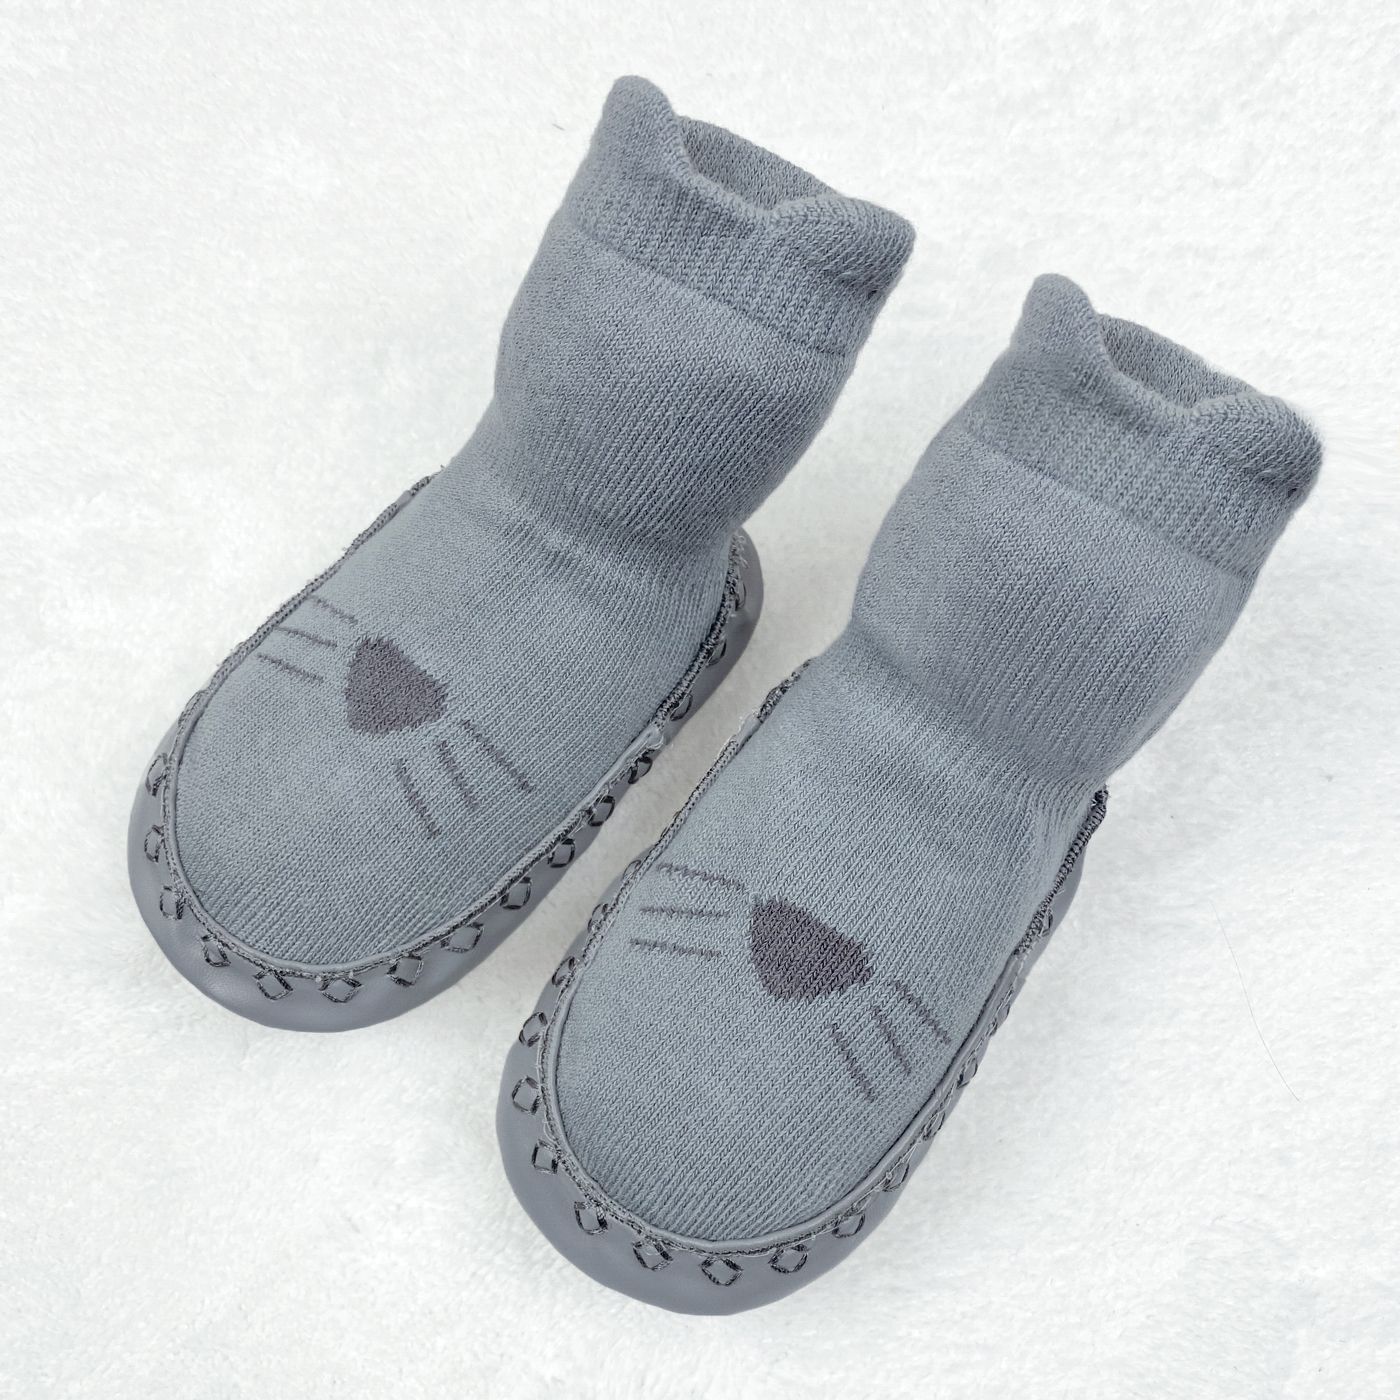 Baby Cartoon Jacquard Antiskid Floor Socks